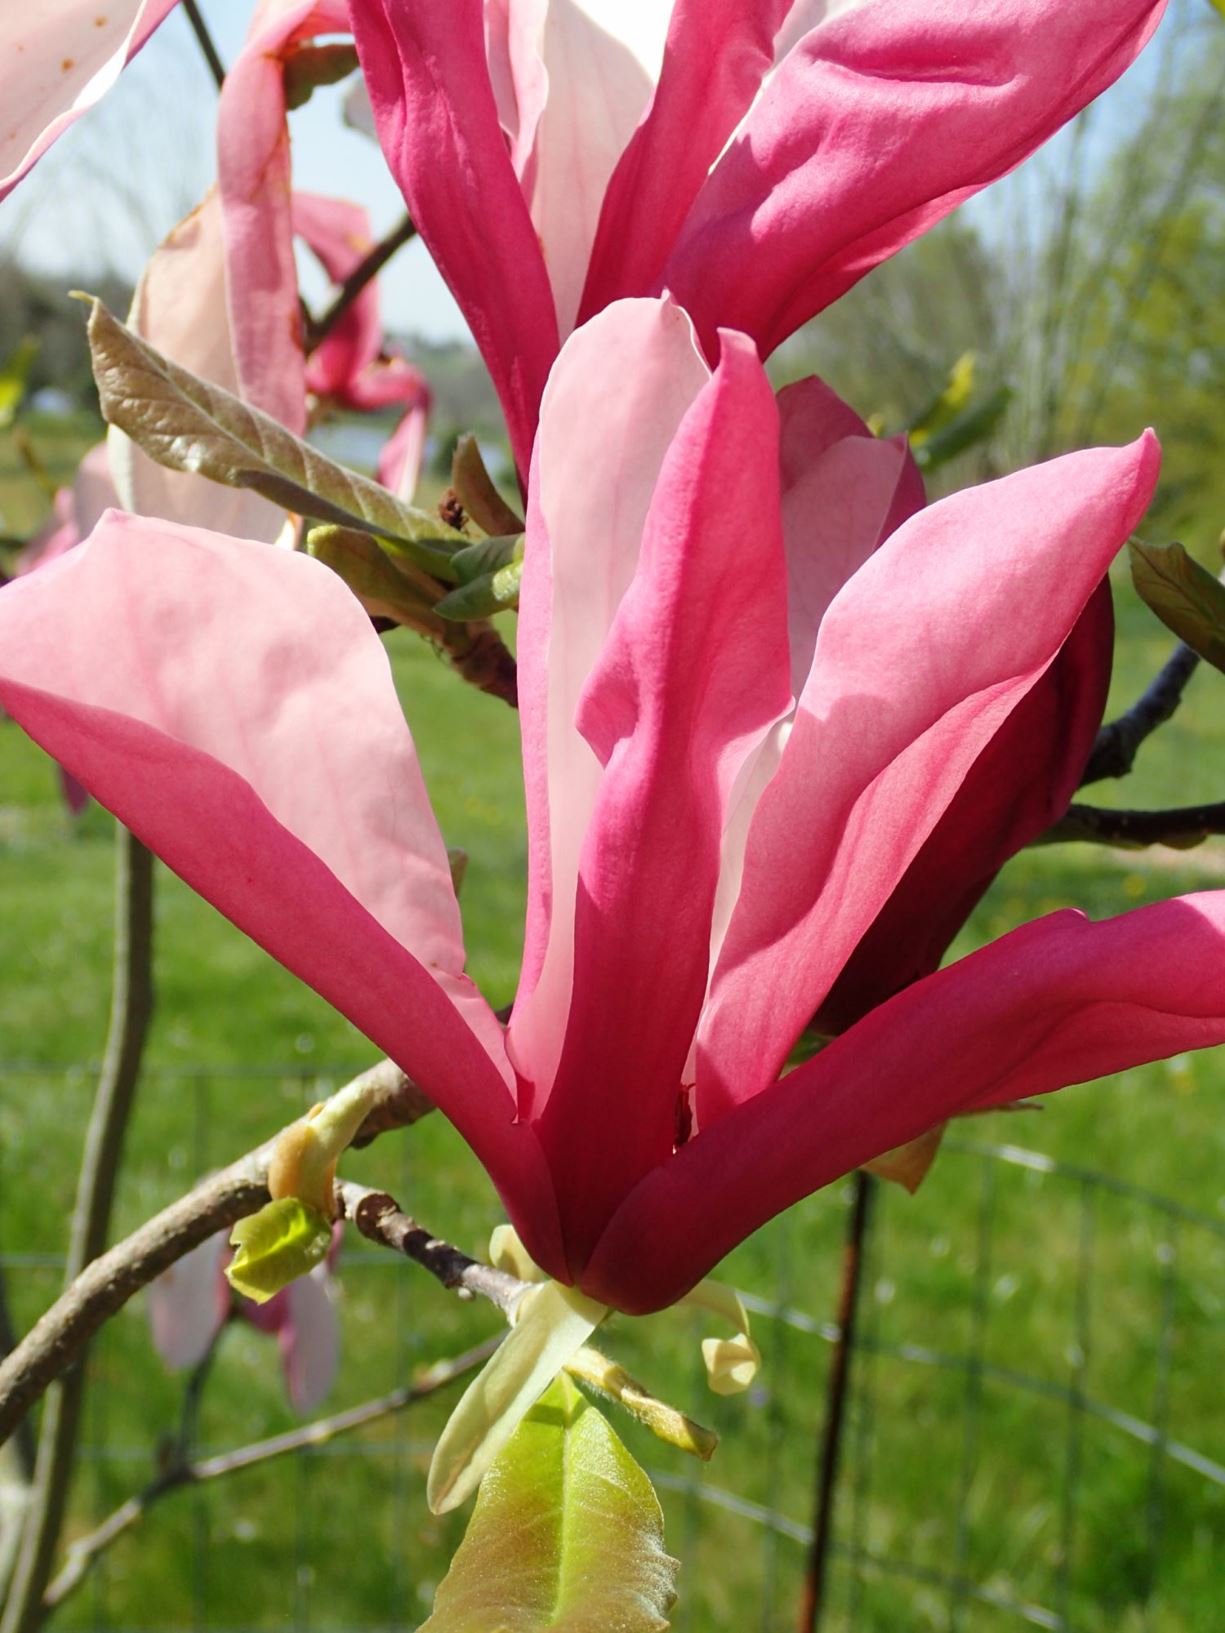 Magnolia 'Gorgeous' - Gorgeous magnolia